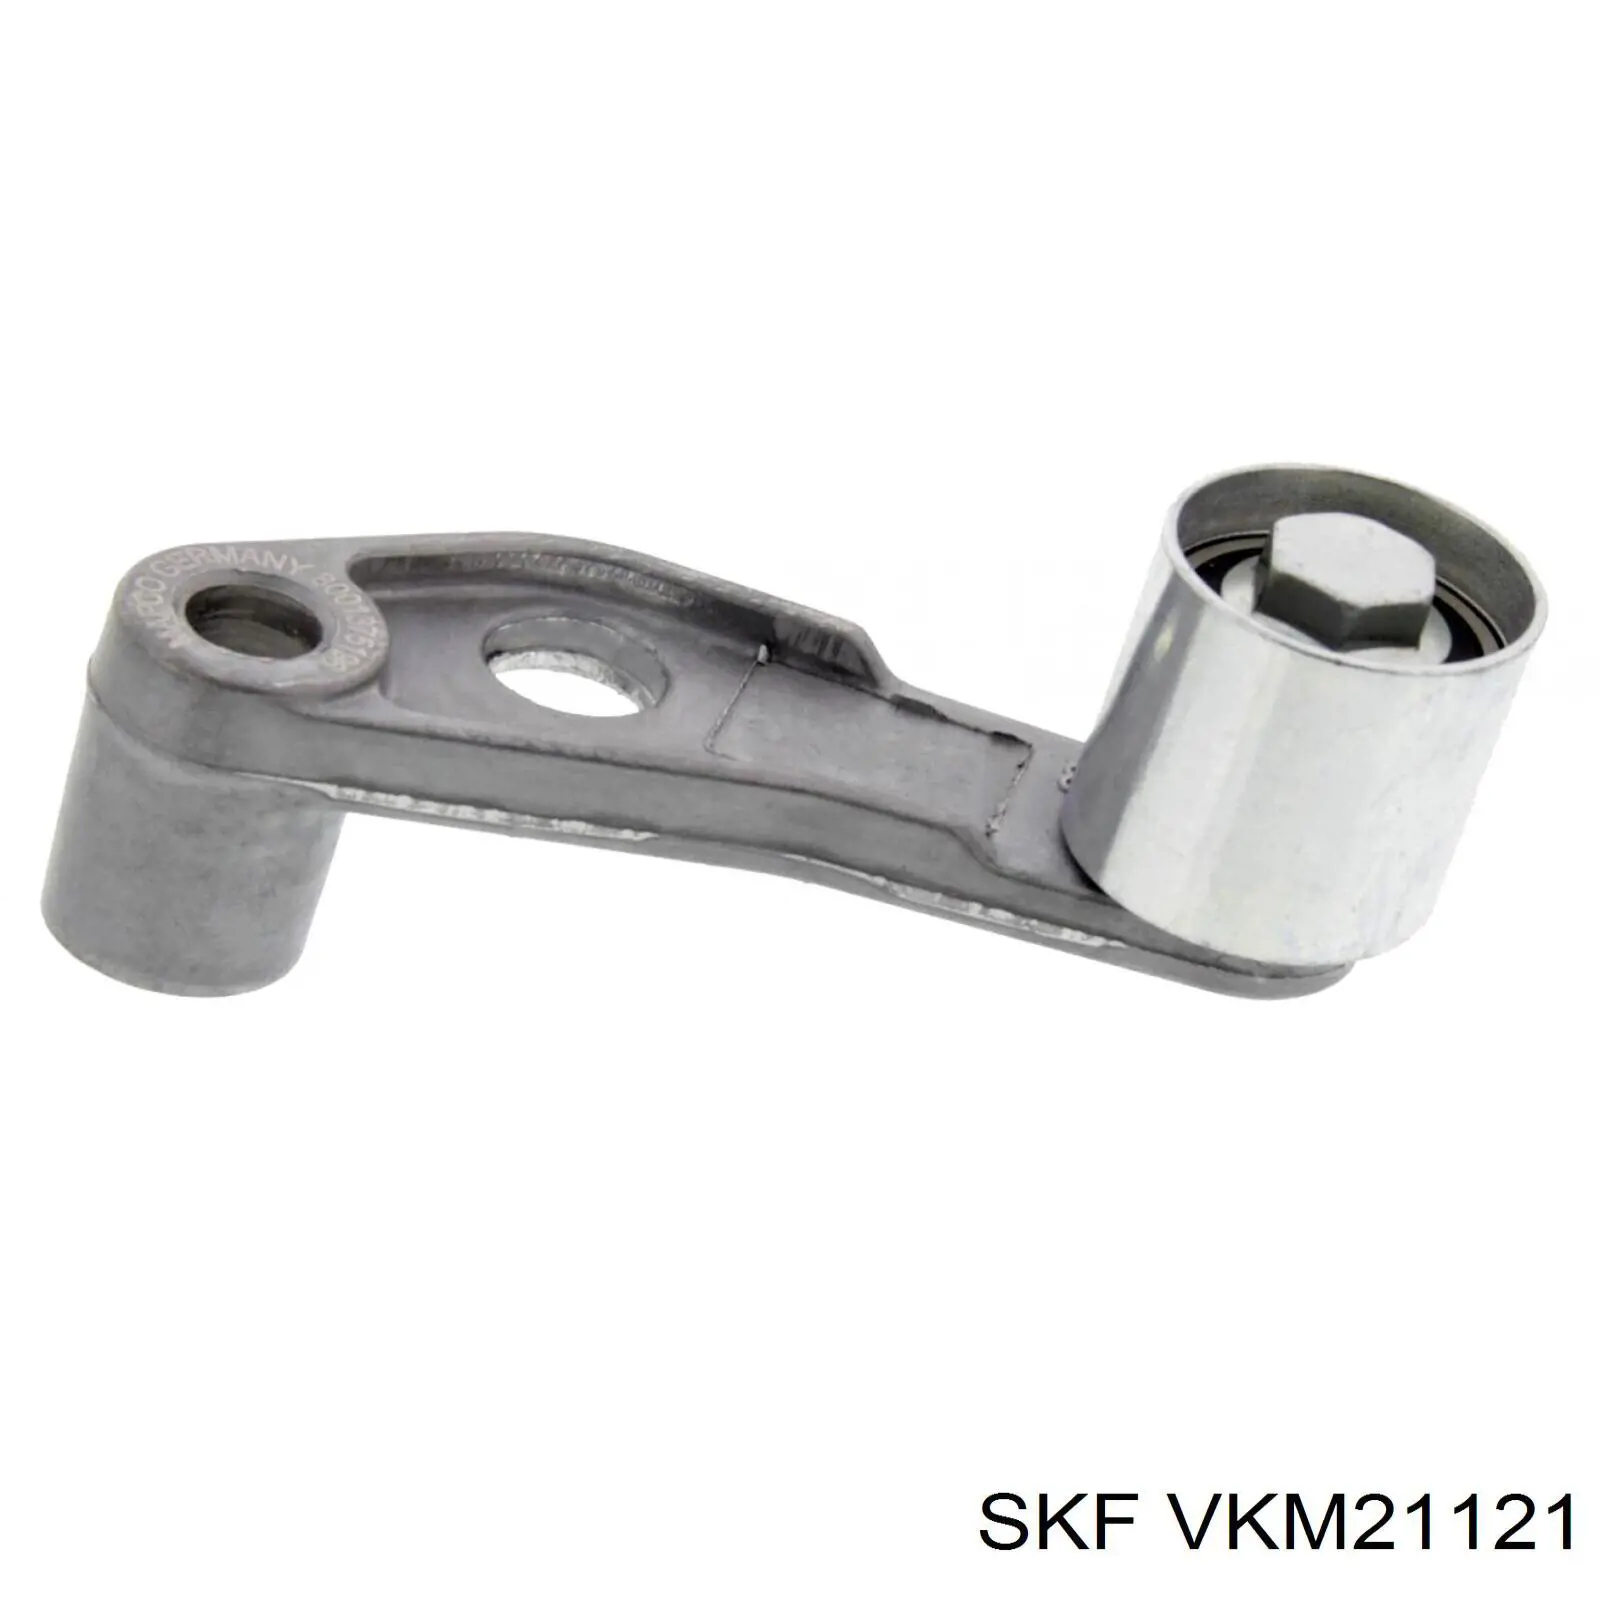 VKM 21121 SKF rodillo intermedio de correa dentada